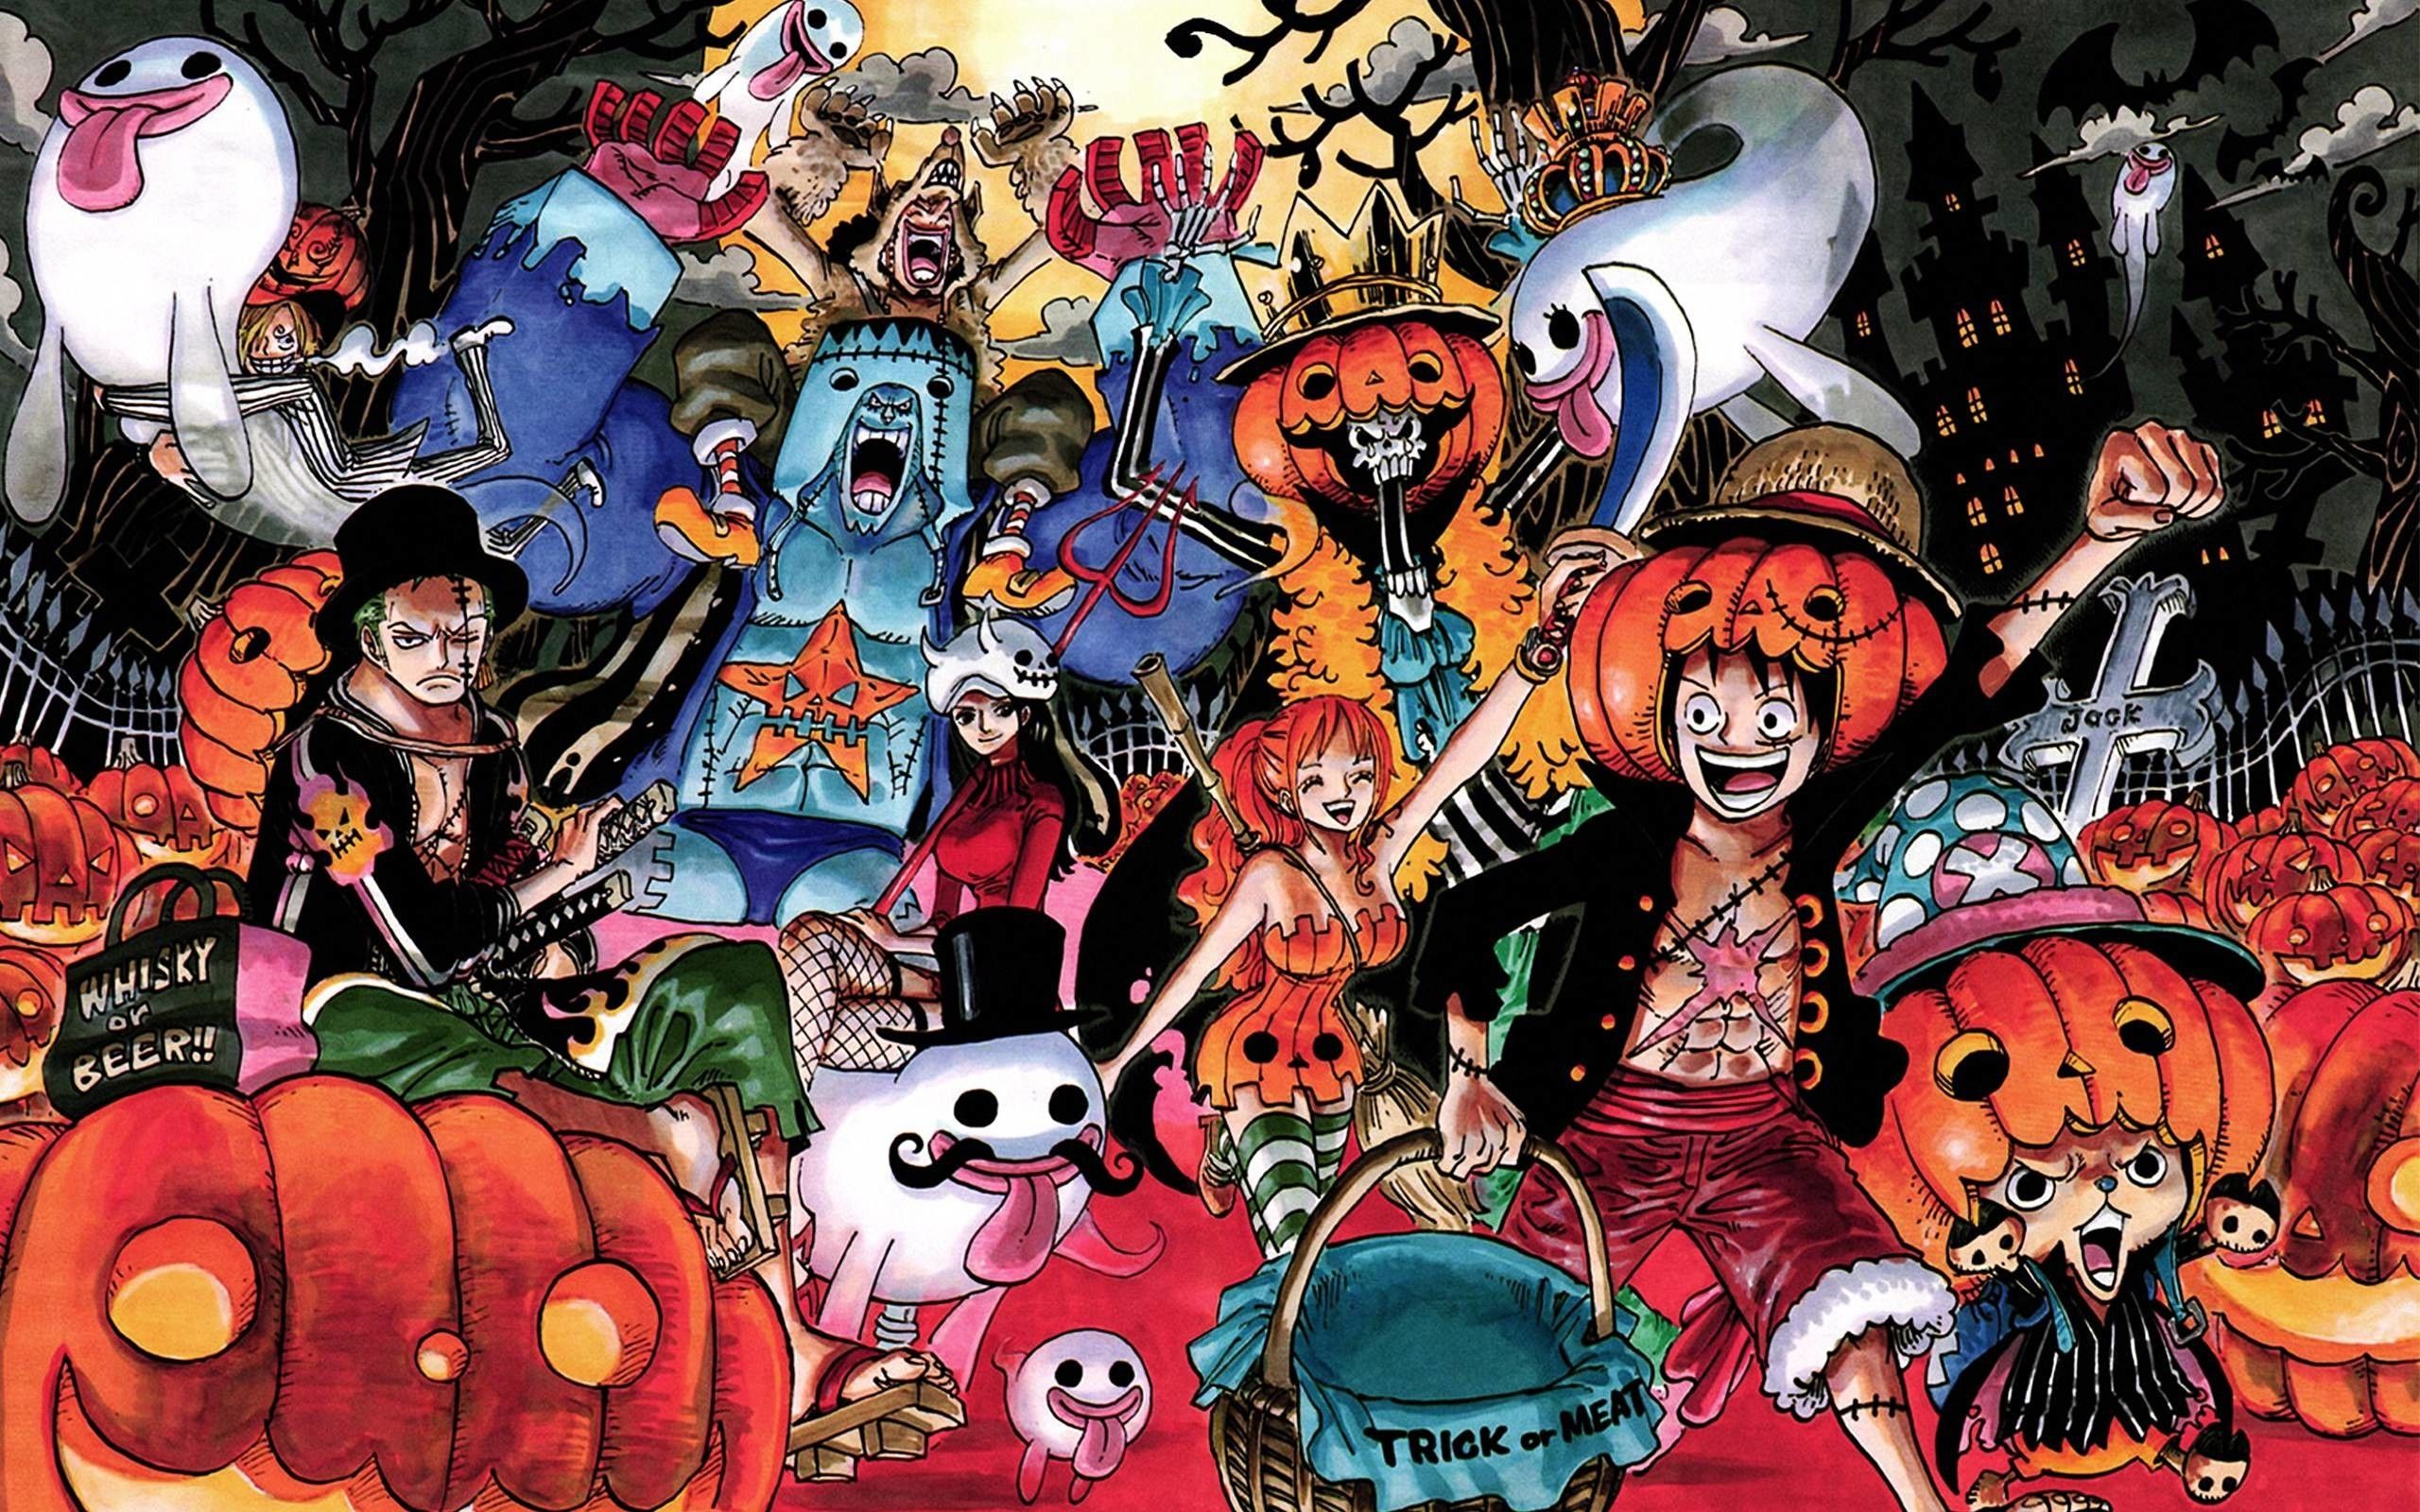 One Piece: As 5 censuras mais bizarras do anime